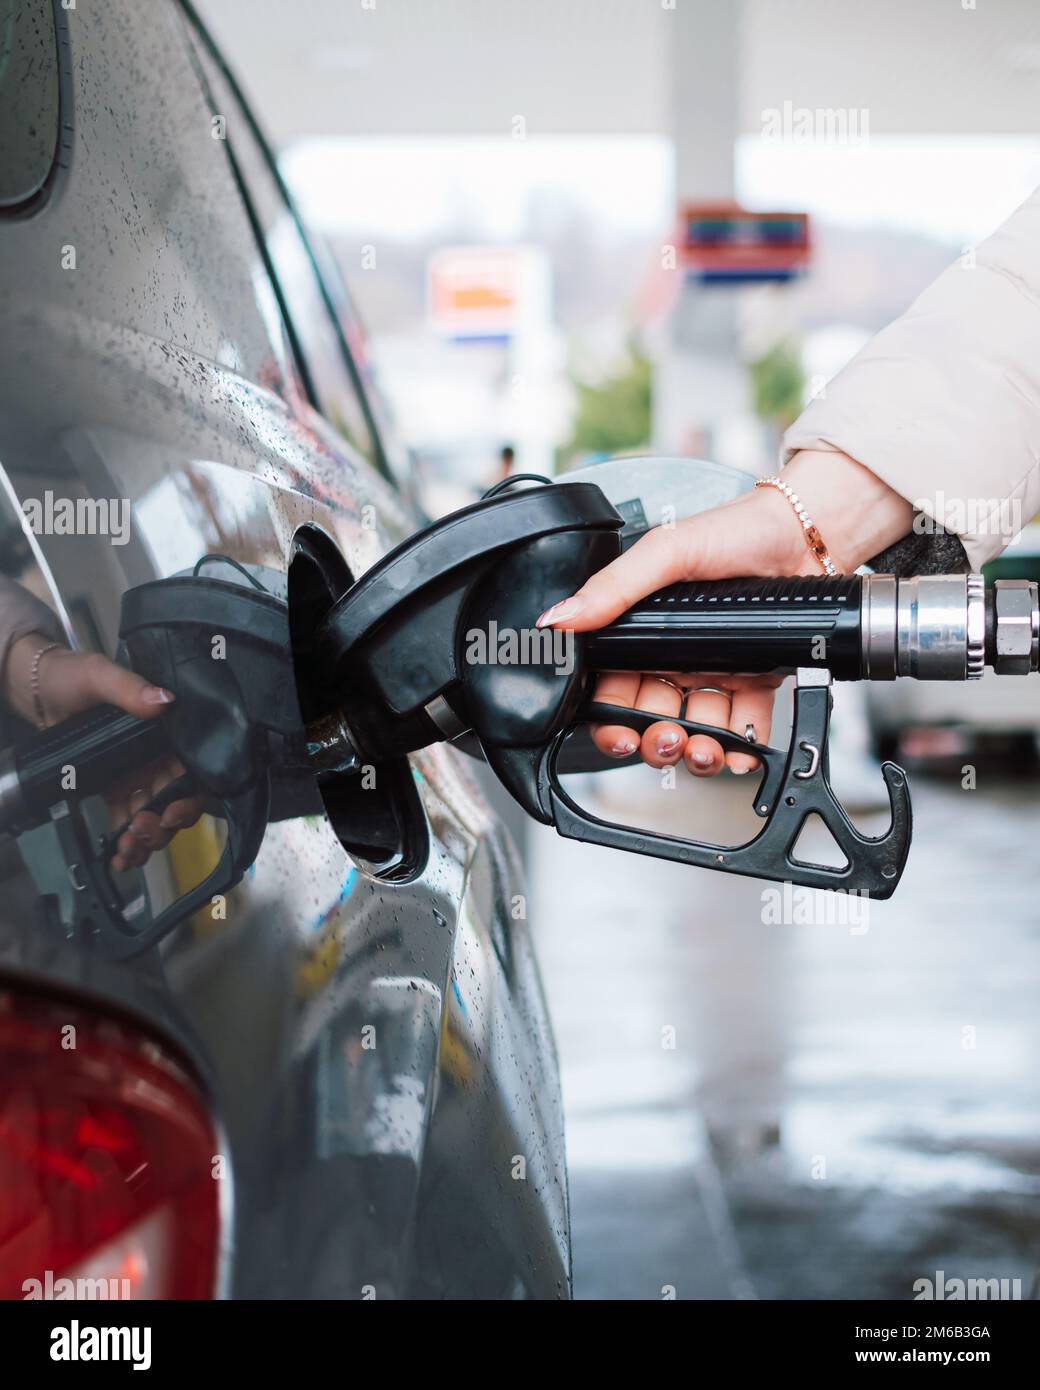 Femme pompant de l'essence dans la voiture à la station-service. Concept d'augmentation du prix de l'essence ou de l'essence. Banque D'Images